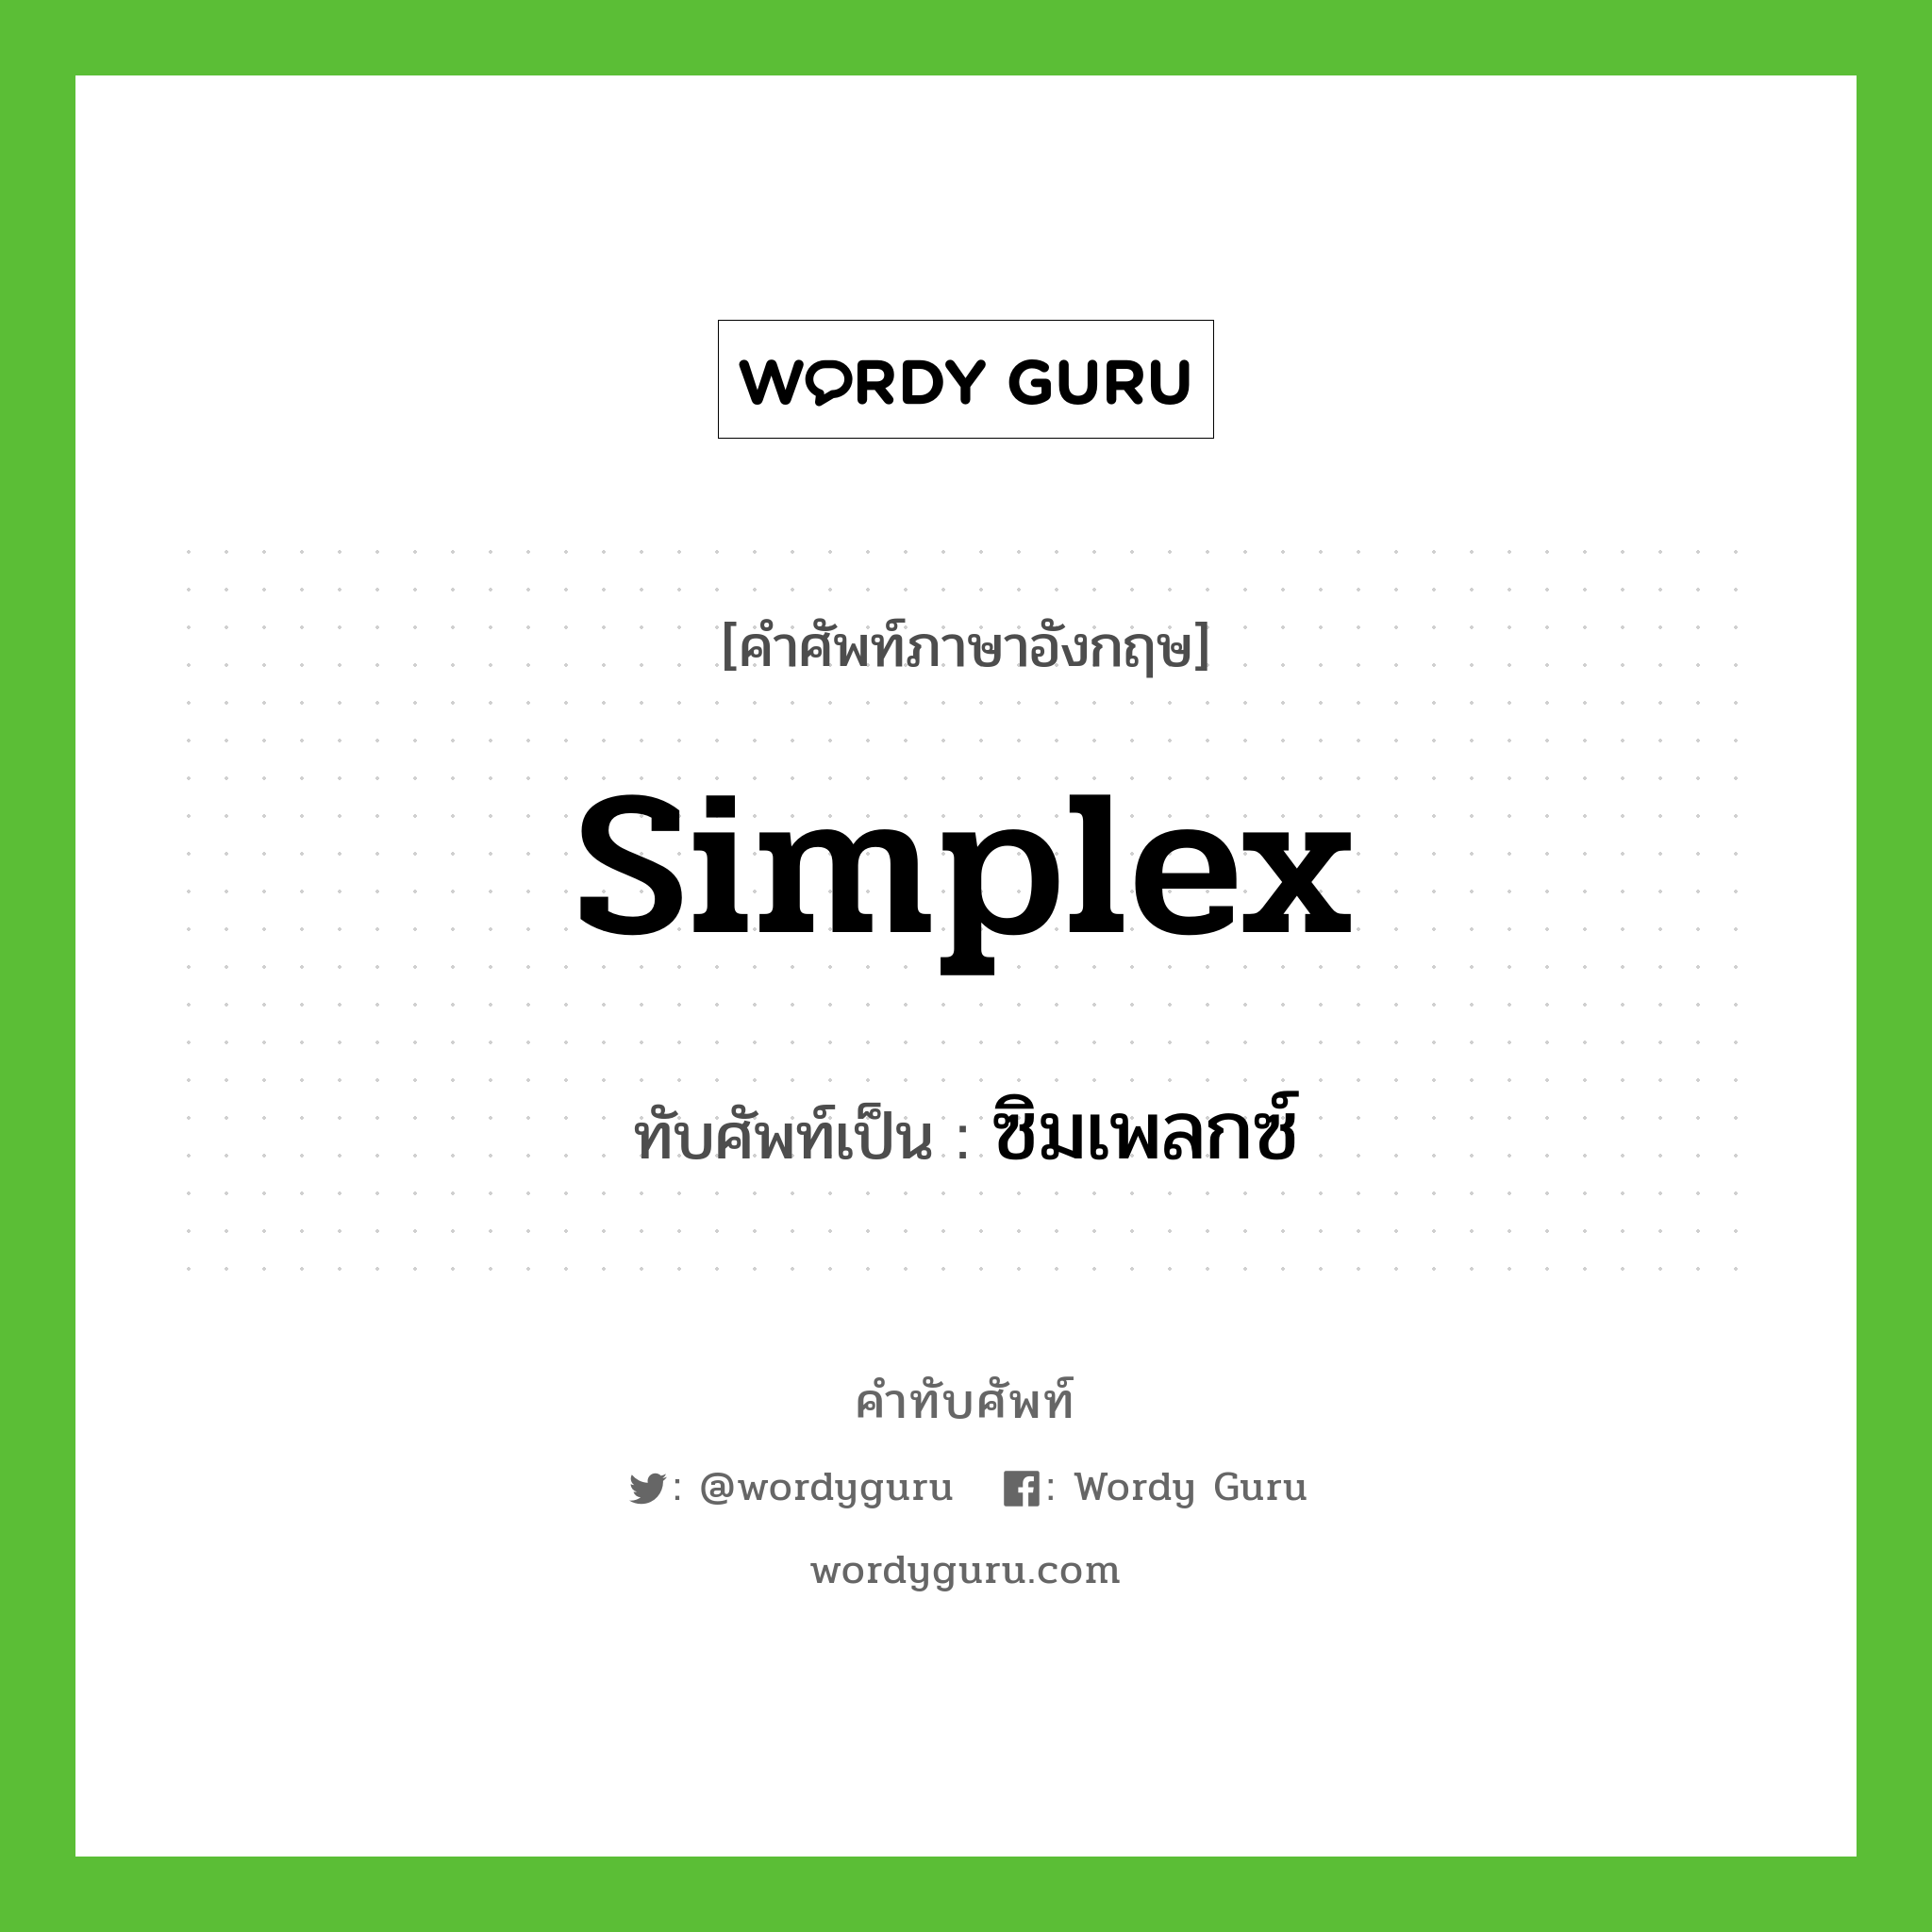 ซิมเพลกซ์ เขียนอย่างไร?, คำศัพท์ภาษาอังกฤษ ซิมเพลกซ์ ทับศัพท์เป็น simplex